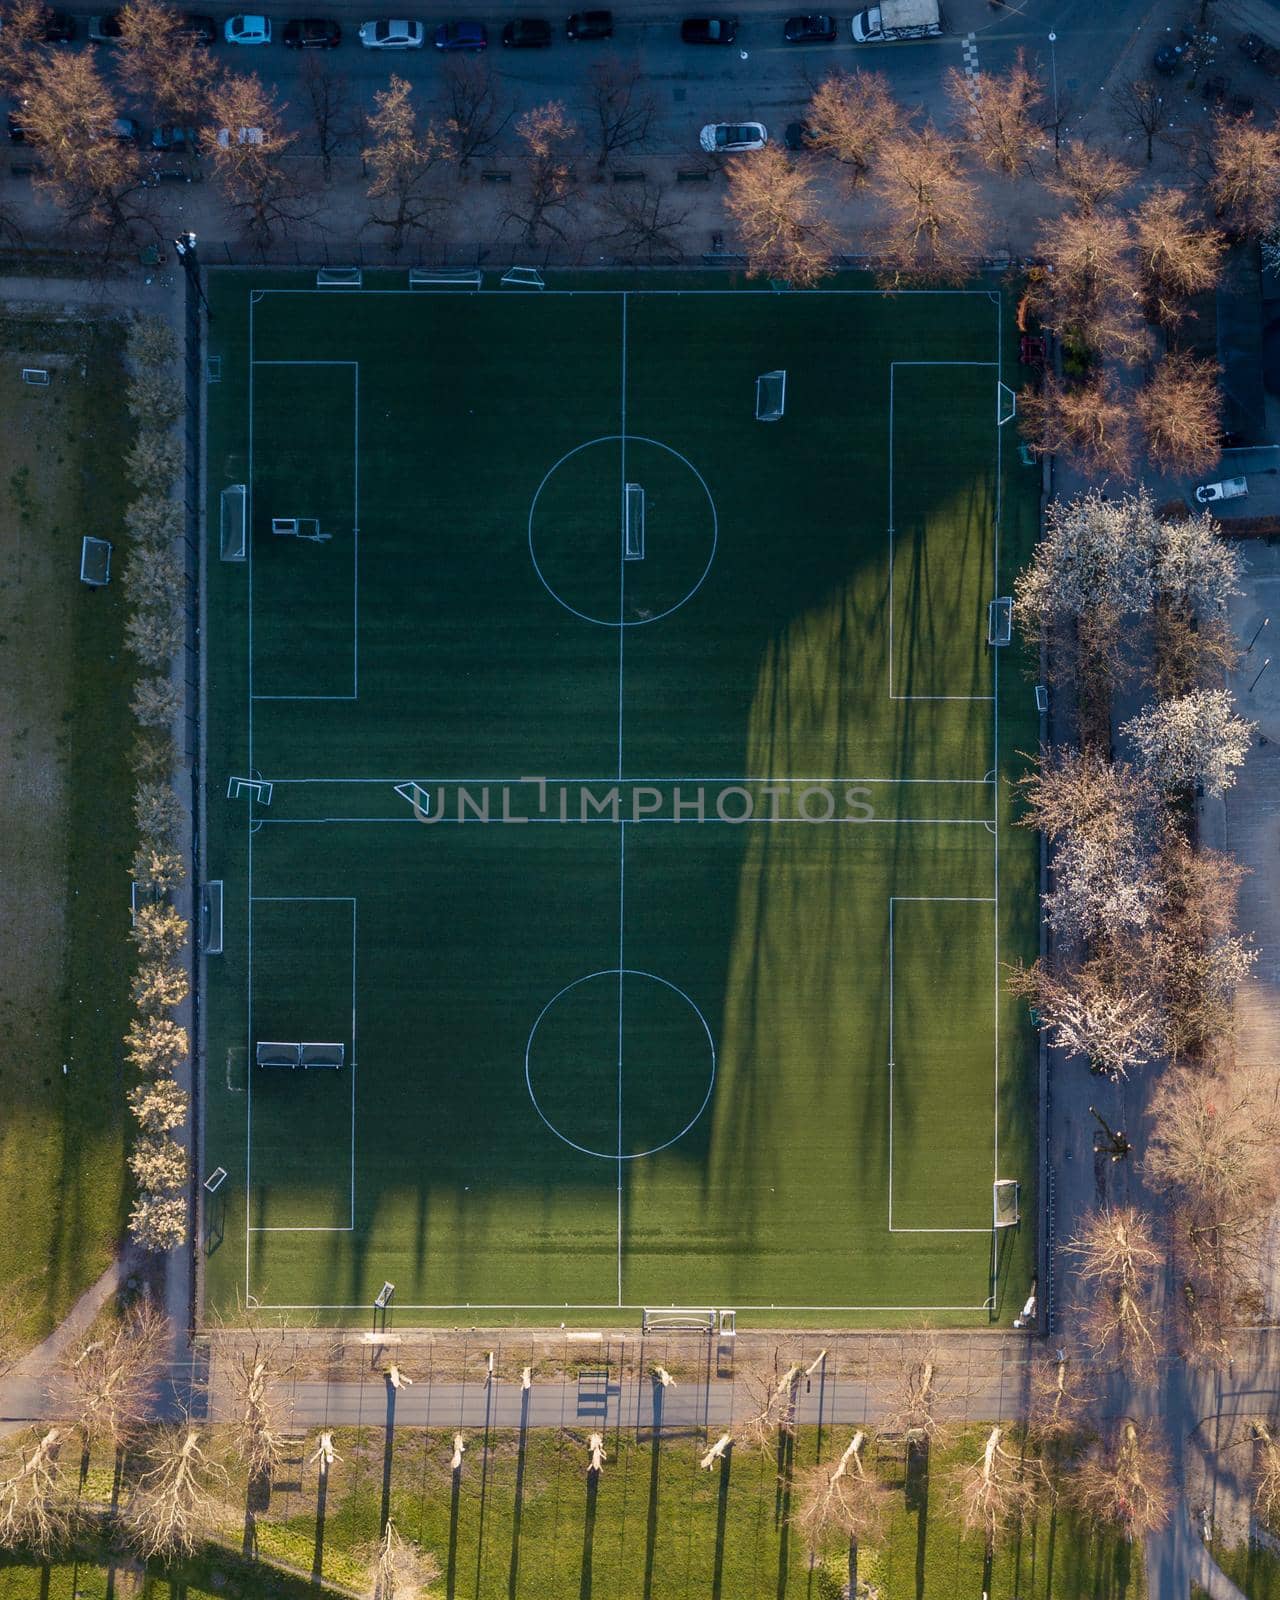 Drone View of Soccer Fields in Norrebro, Copenhagen by oliverfoerstner